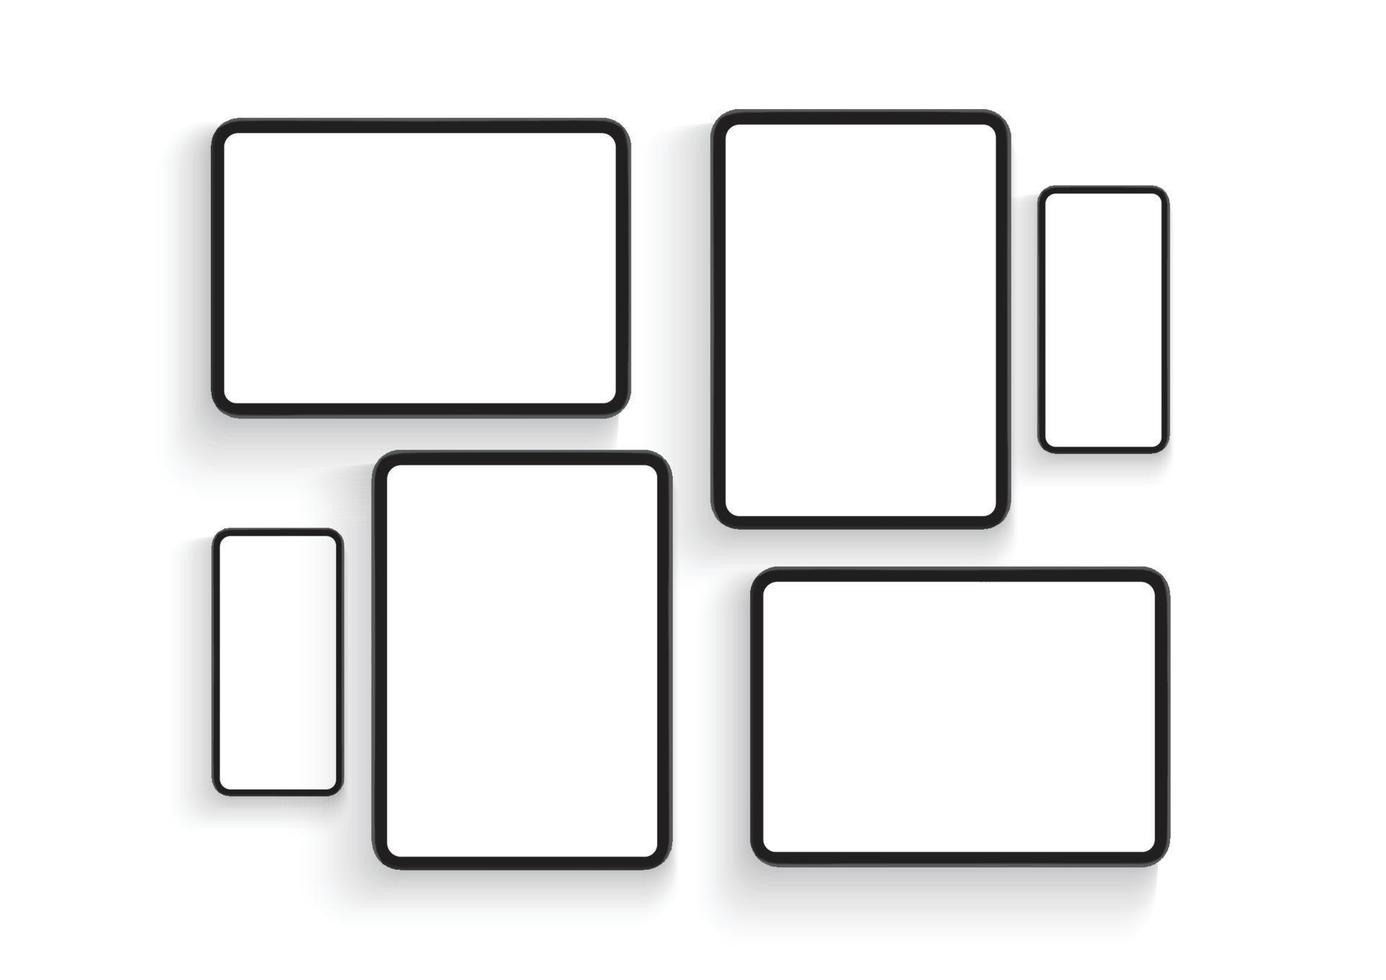 schermi di smartphone e tablet per la presentazione del design di app mobili, isolati su sfondo bianco. illustrazione vettoriale